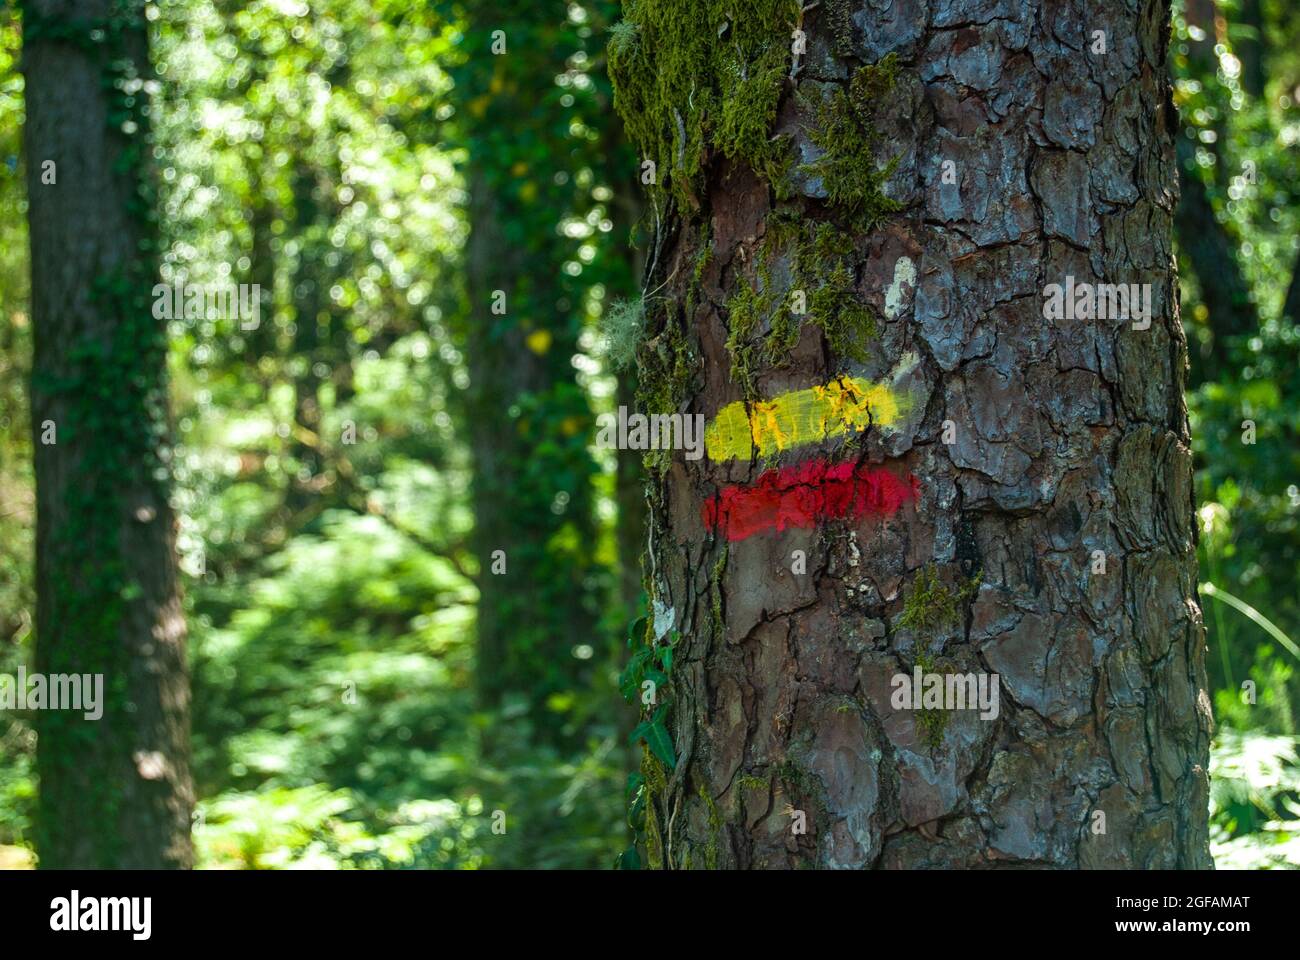 Rot-gelbes Touristenschild auf einem Baum, der einen Wanderweg in einer wunderschönen Waldlandschaft markiert Stockfoto